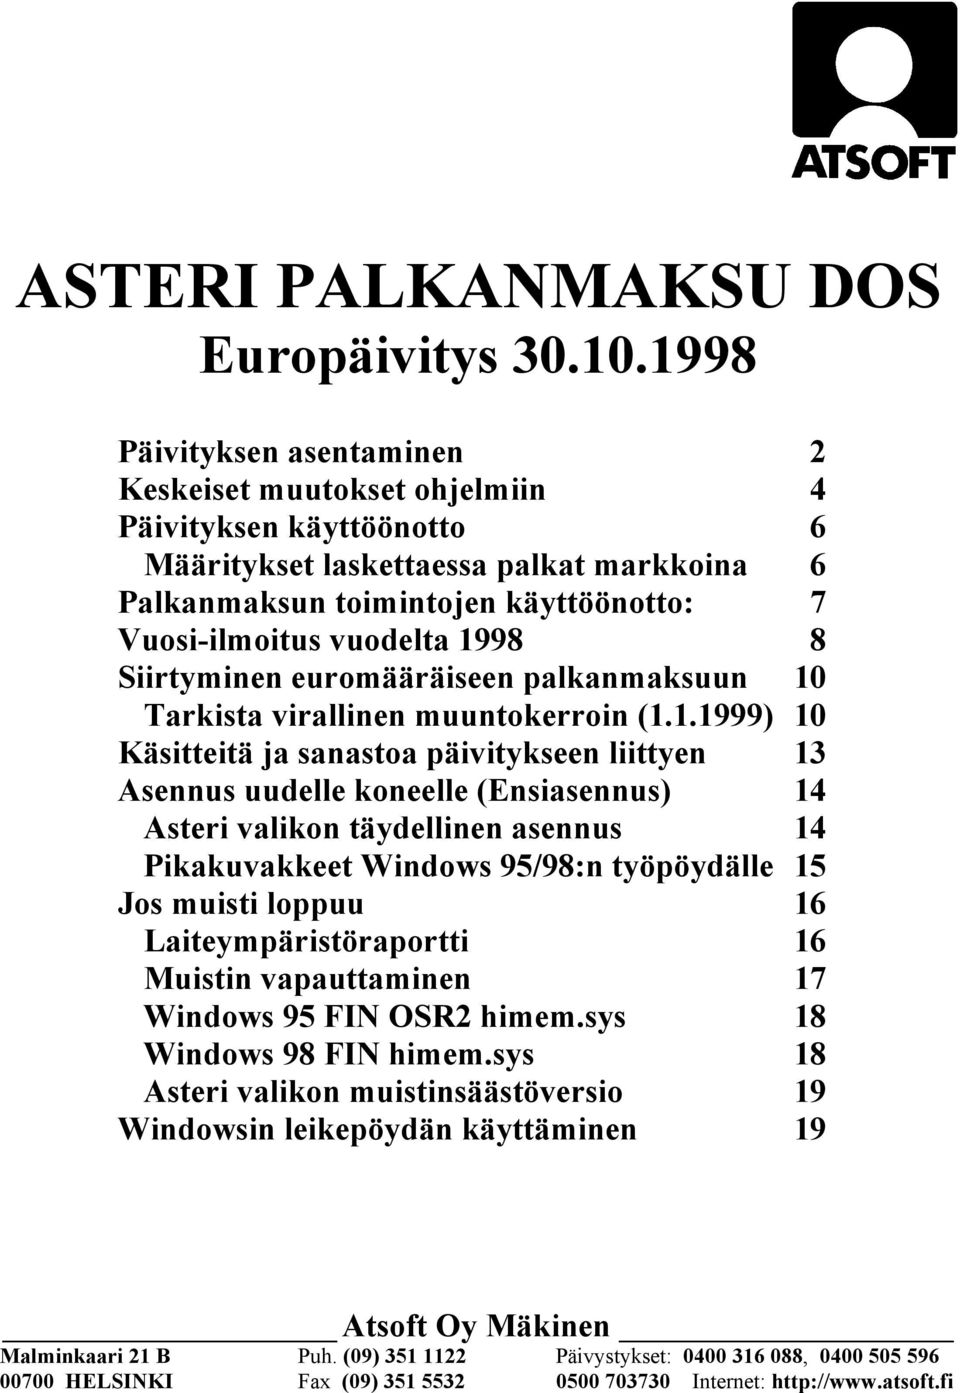 1998 8 Siirtyminen euromääräiseen palkanmaksuun 10 Tarkista virallinen muuntokerroin (1.1.1999) 10 Käsitteitä ja sanastoa päivitykseen liittyen 13 Asennus uudelle koneelle (Ensiasennus) 14 Asteri